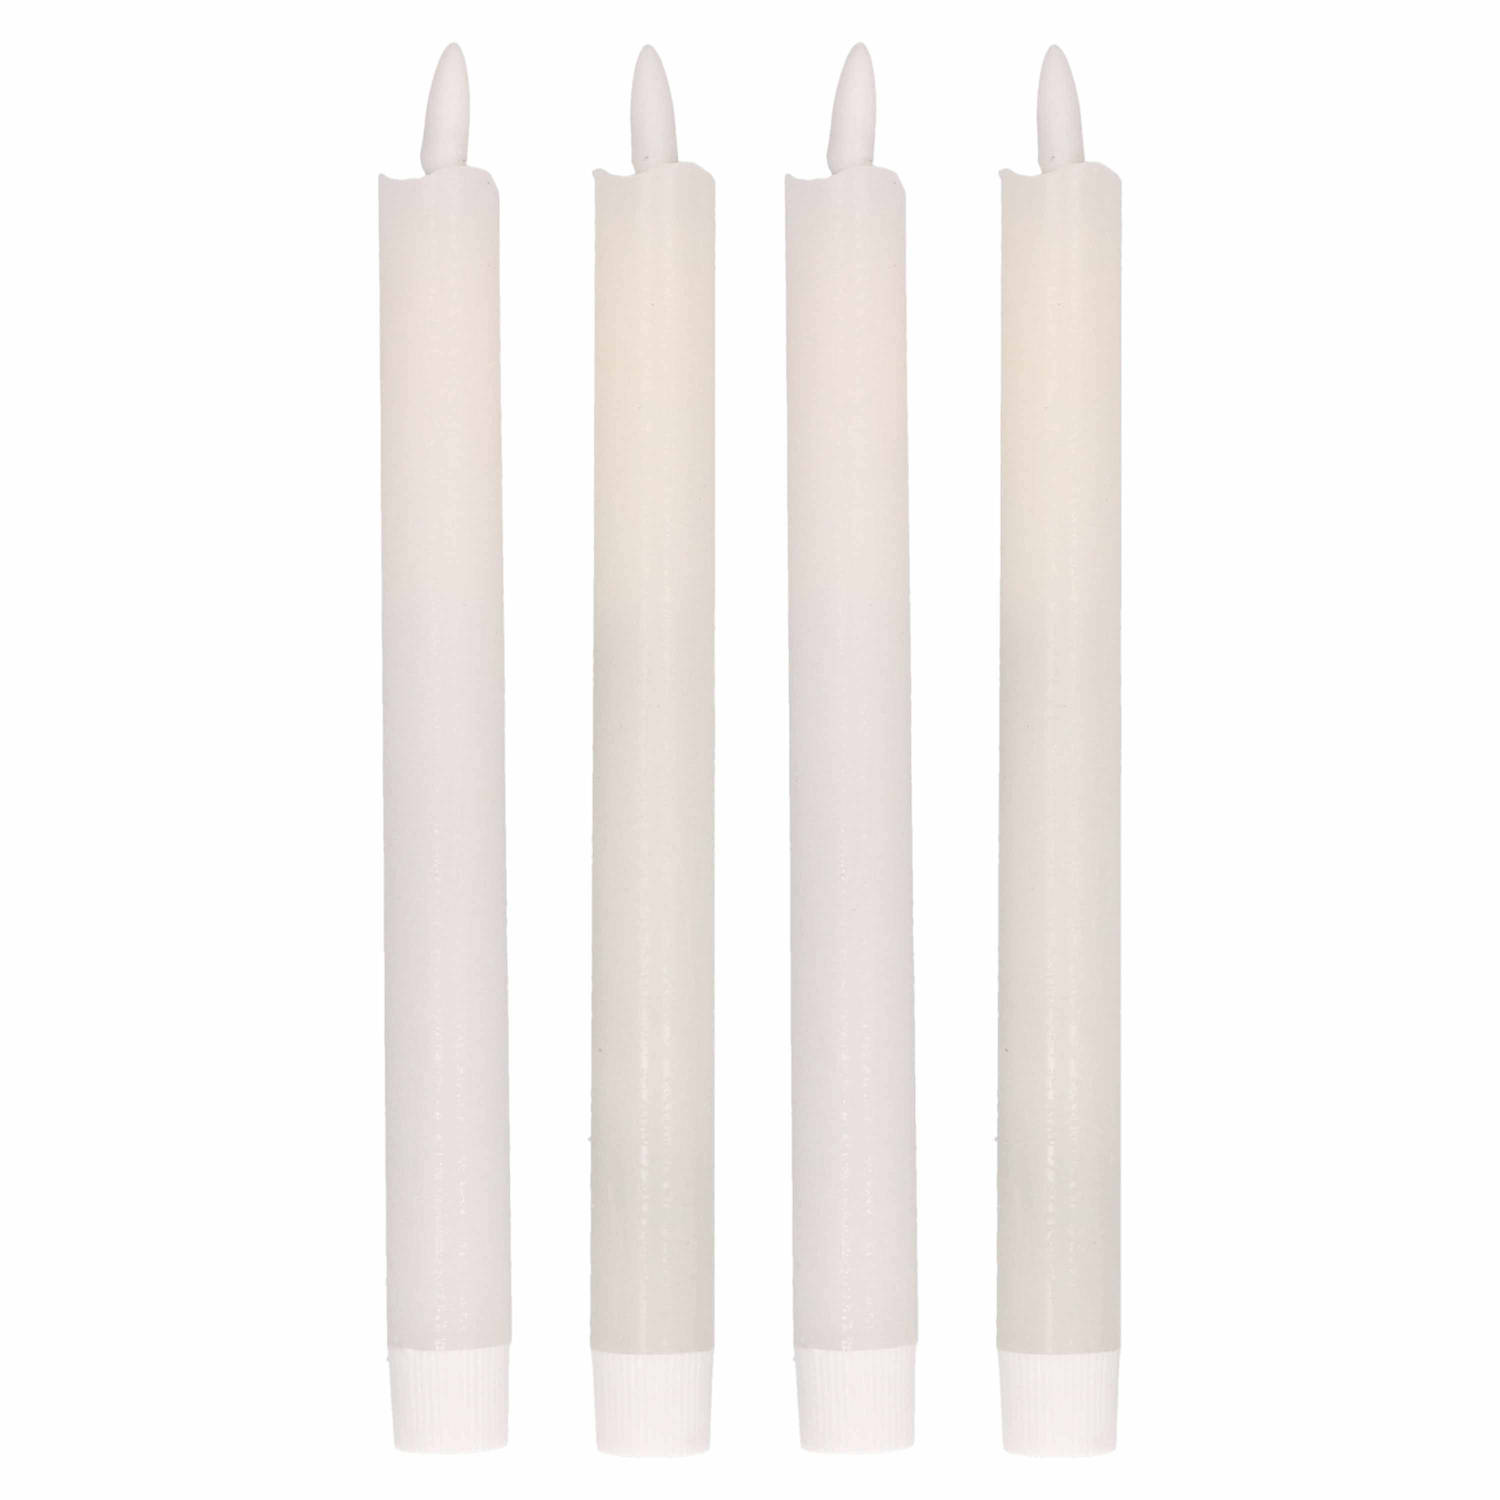 zuurstof maak je geïrriteerd Psychologisch 4x Witte Led kaarsen/dinerkaarsen 25,5 cm - LED kaarsen | Blokker